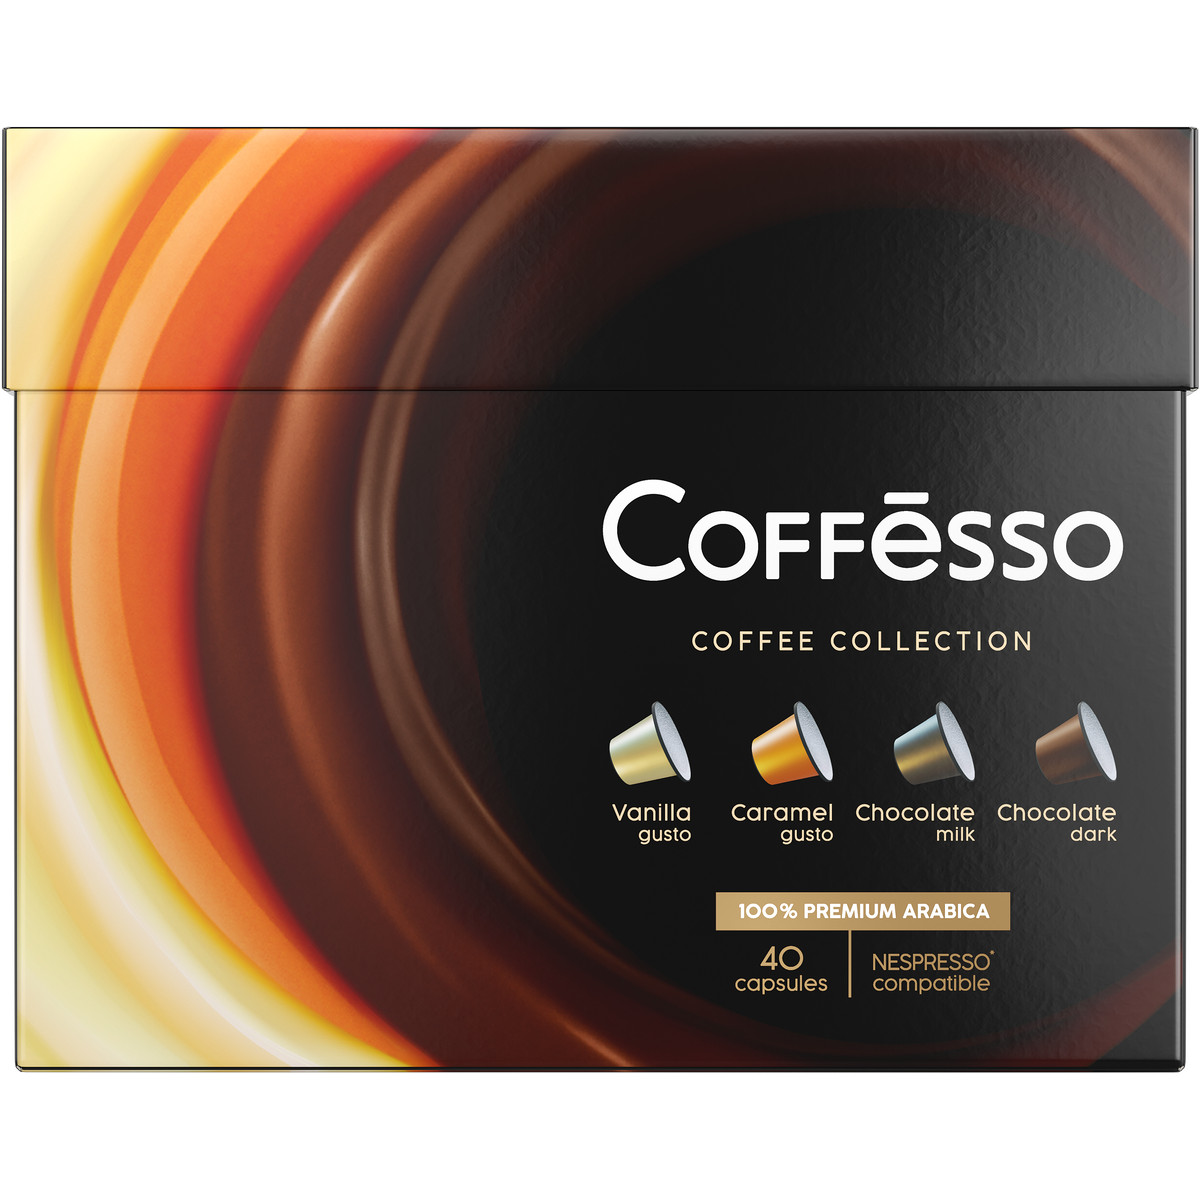 Кофе в капсулах Coffesso Ассорти 4 вкуса 40 шт ваниль карамель молочный шоколад темный шоколад - фото 1